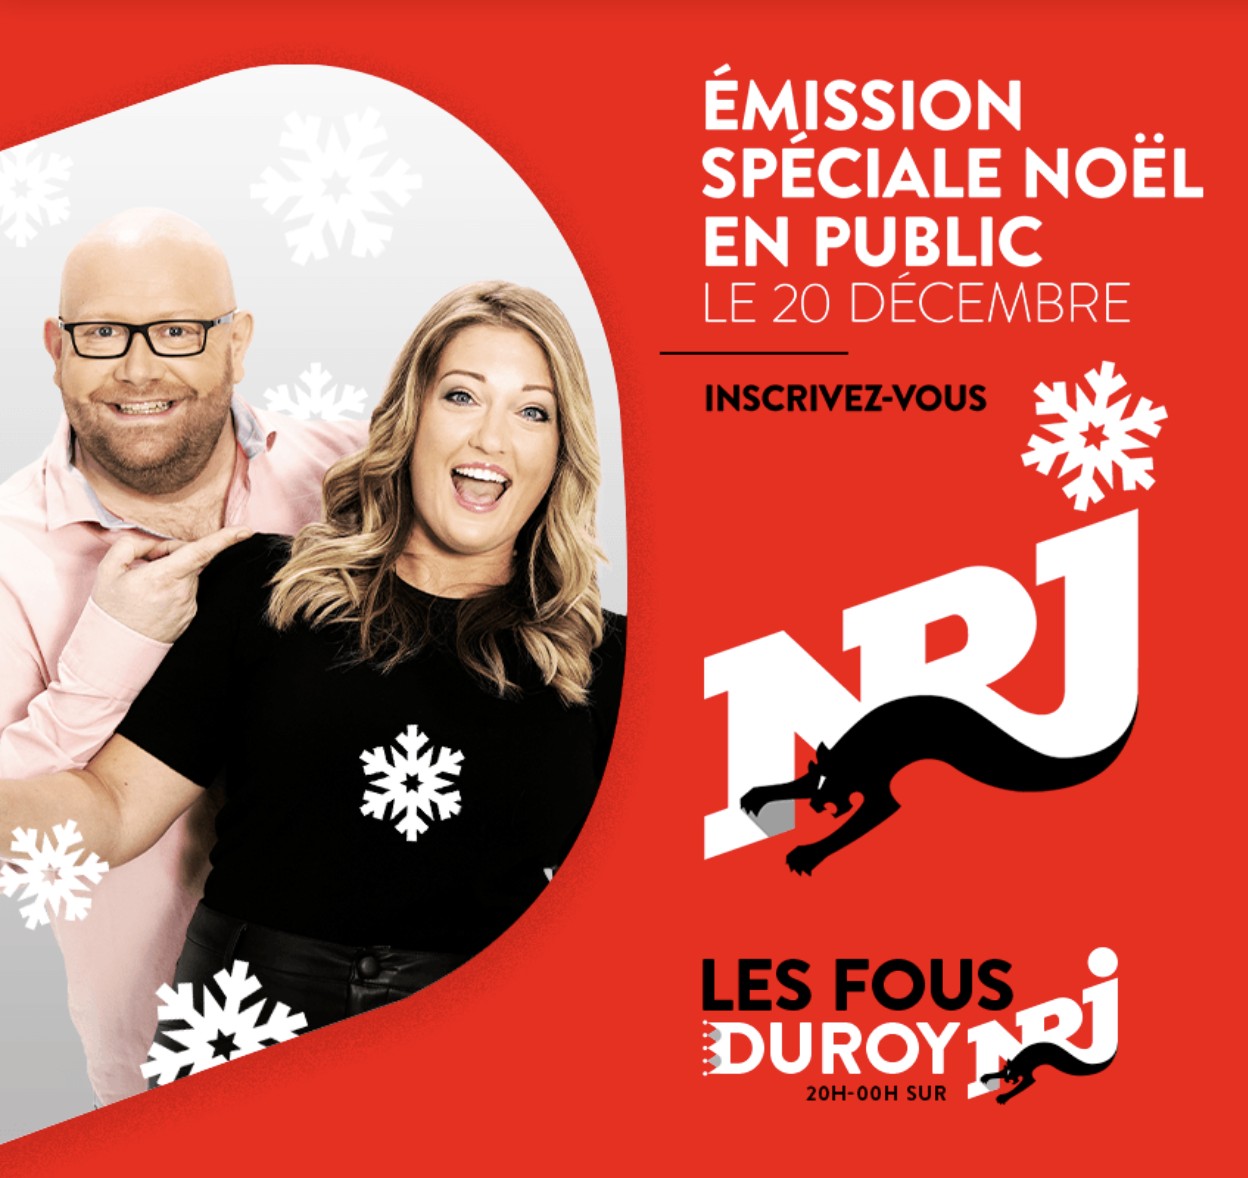 NRJ Belgique organise un "pré-réveillon" de Noël